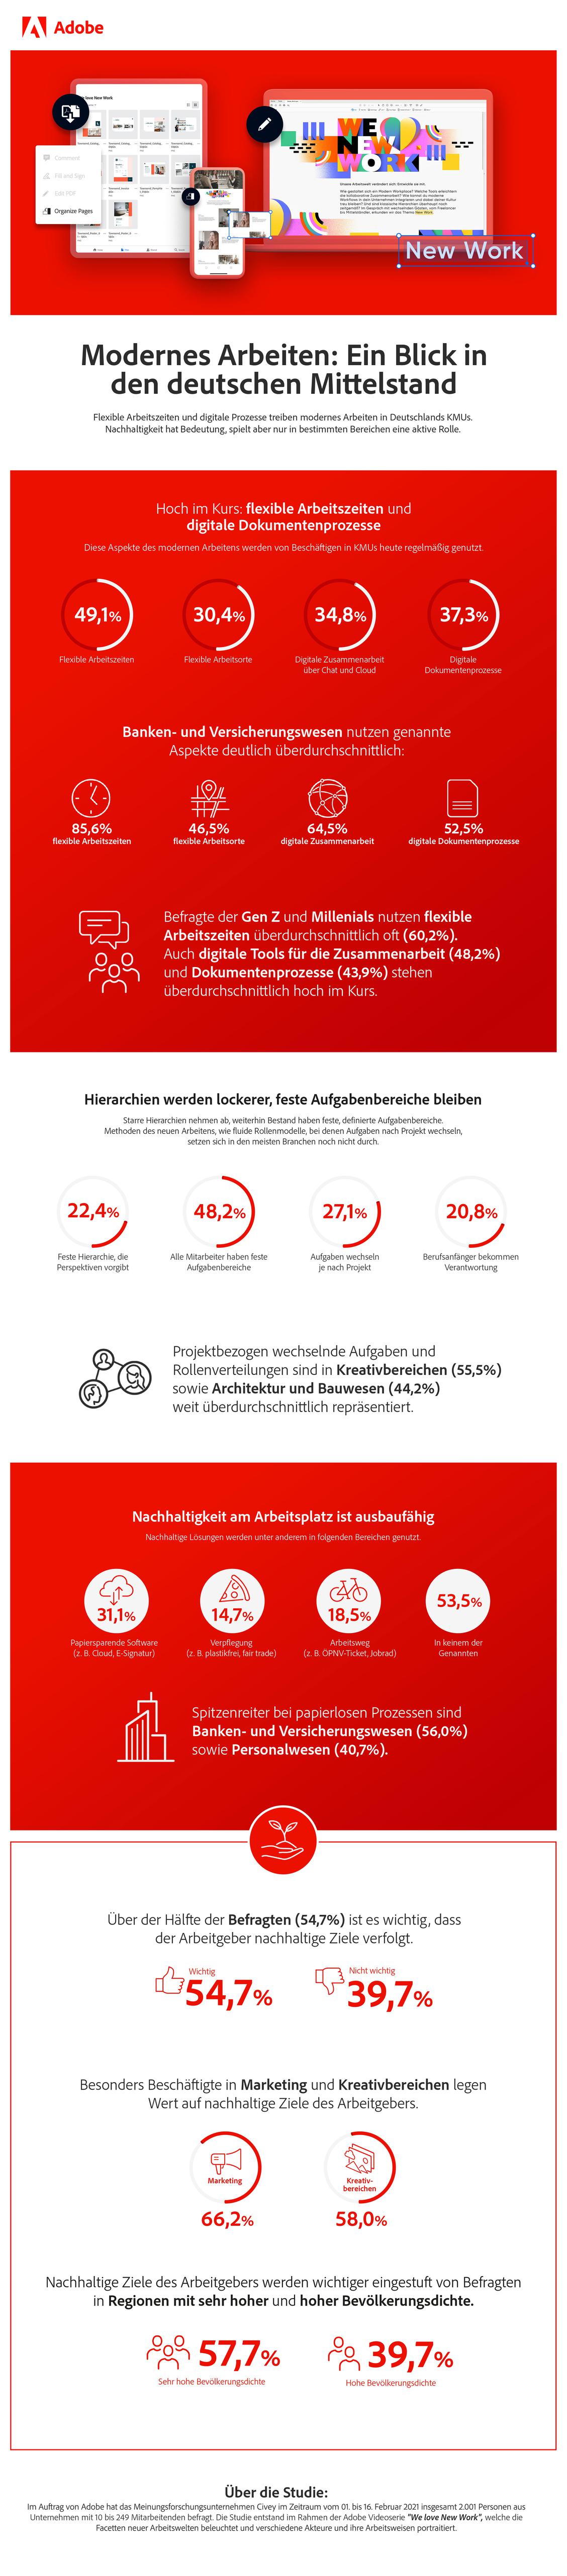 New Work: Umsetzung im deutschen Mittelstand 2021 (Grafik: Adobe)